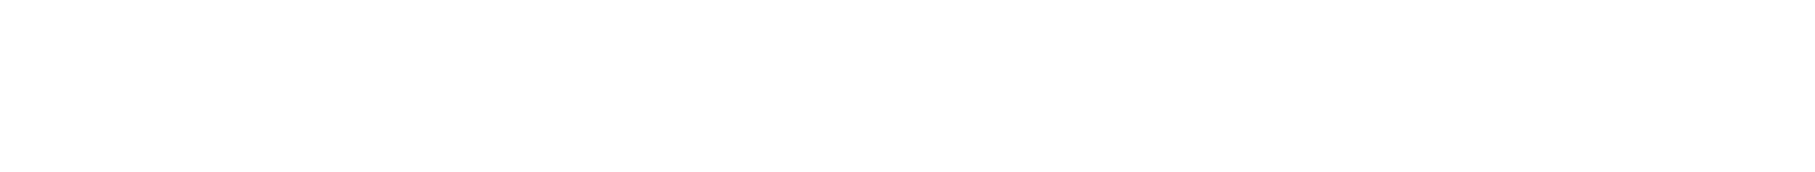 Luna Norte logo